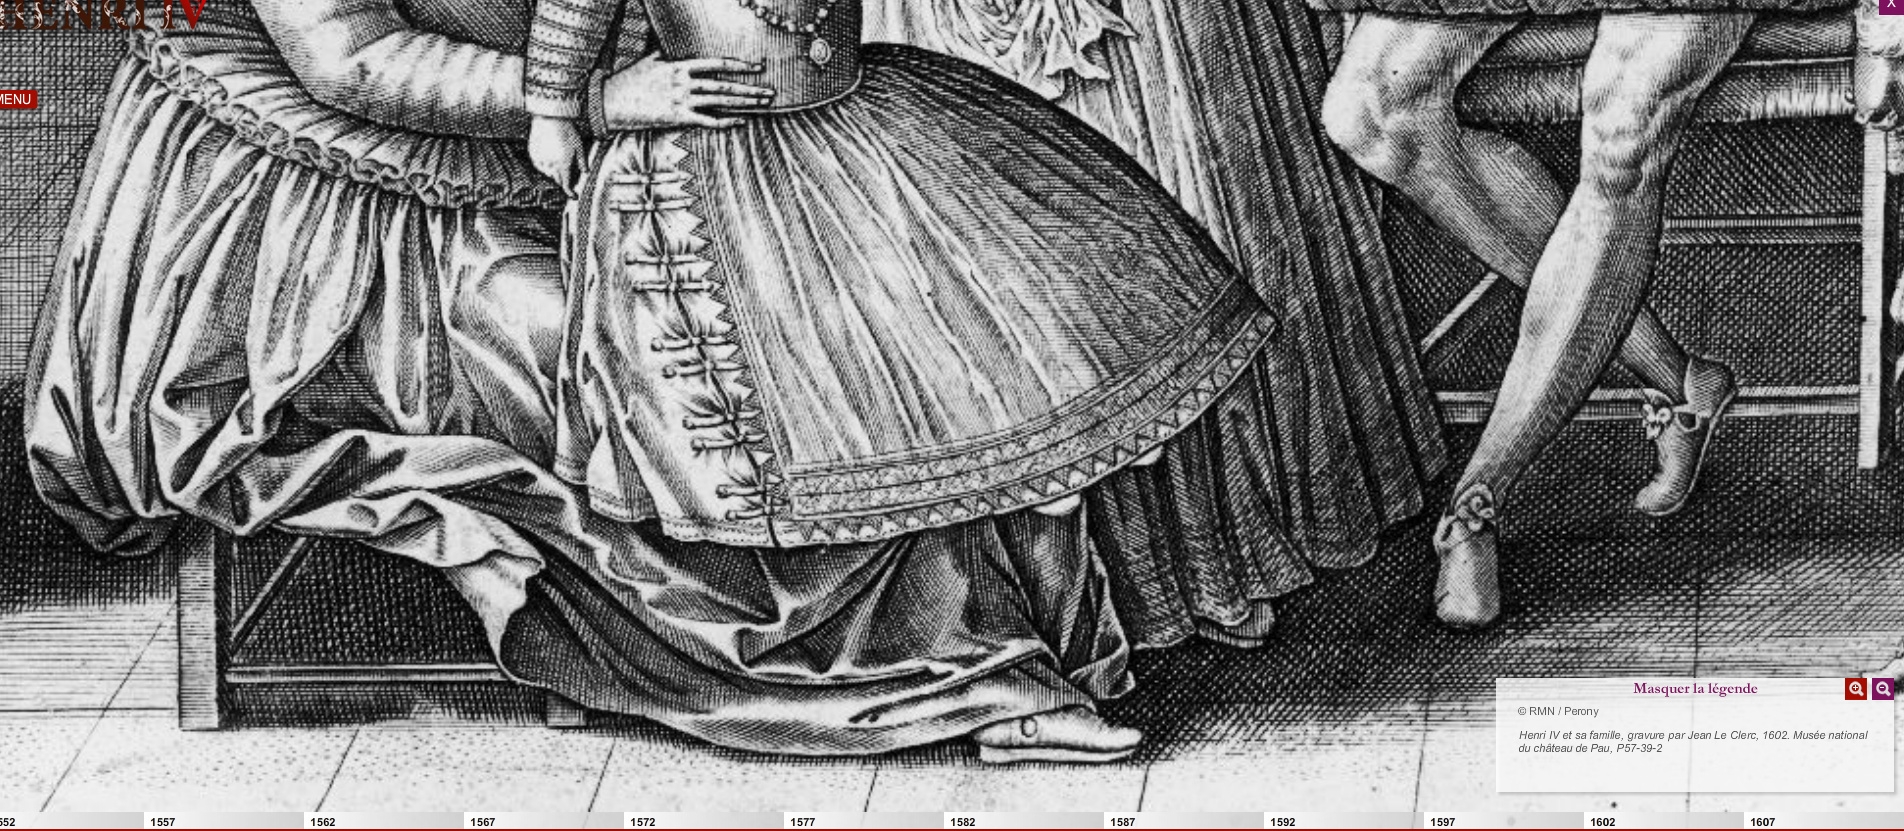 1602 - Henri IV et sa famille - Jean Le Clerc